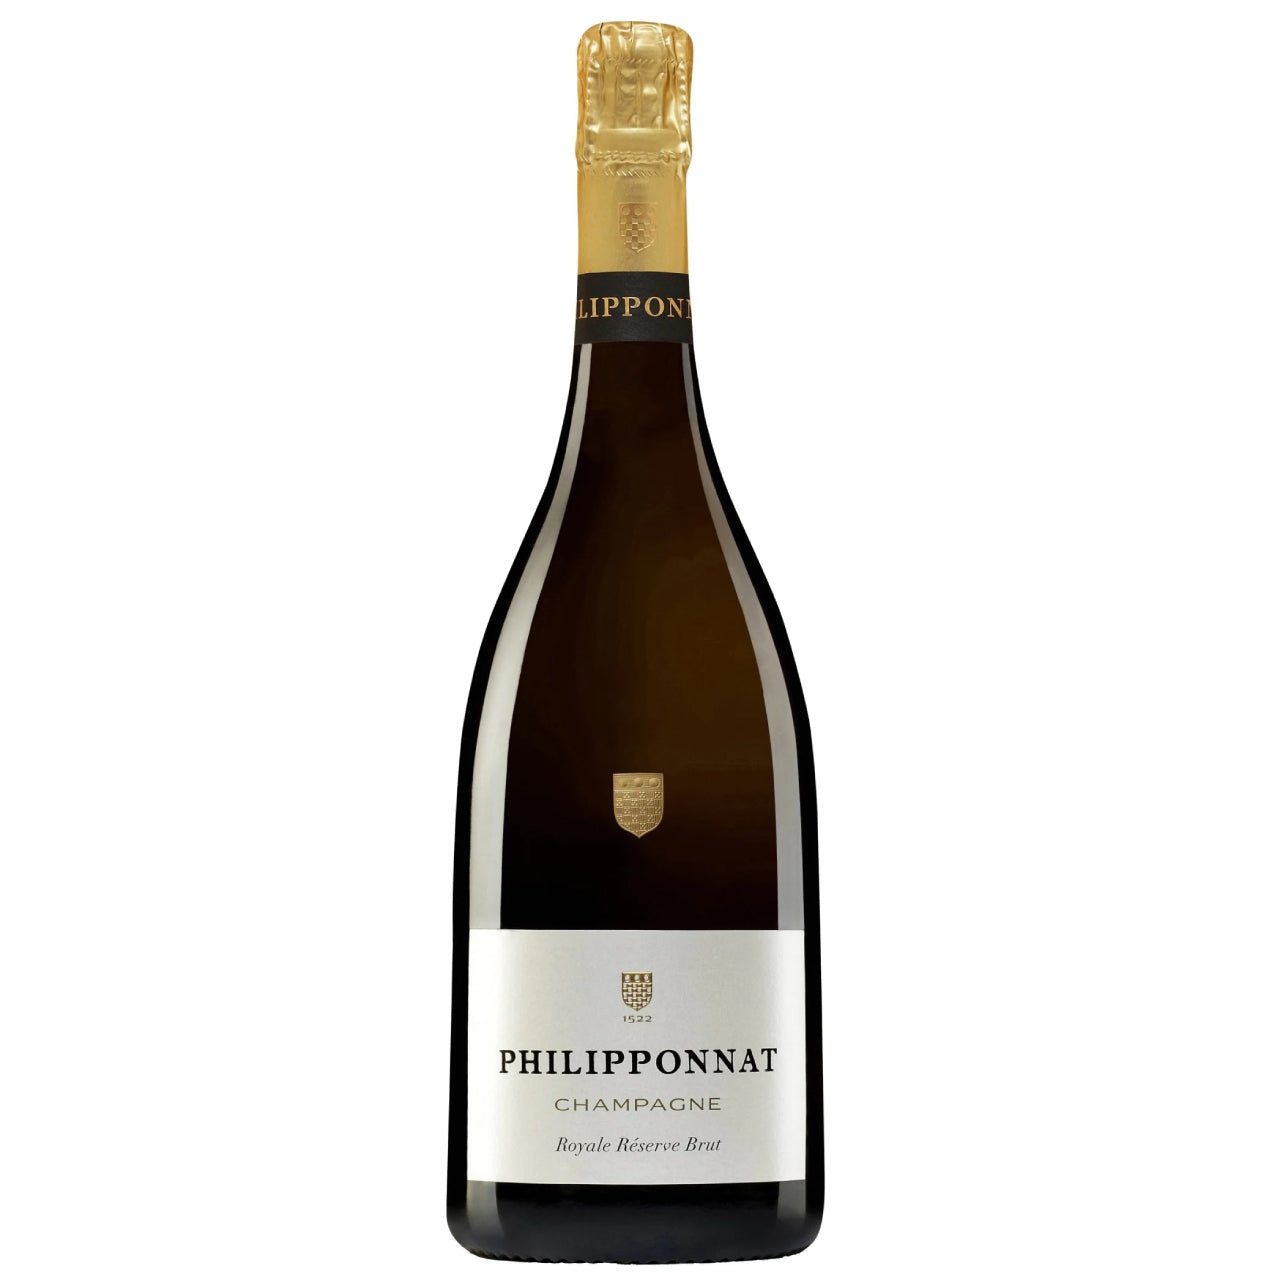 Philipponnat Royale Réserve Brut 750ml, Champagne - Wine France Champagne - Liquor Wine Cave